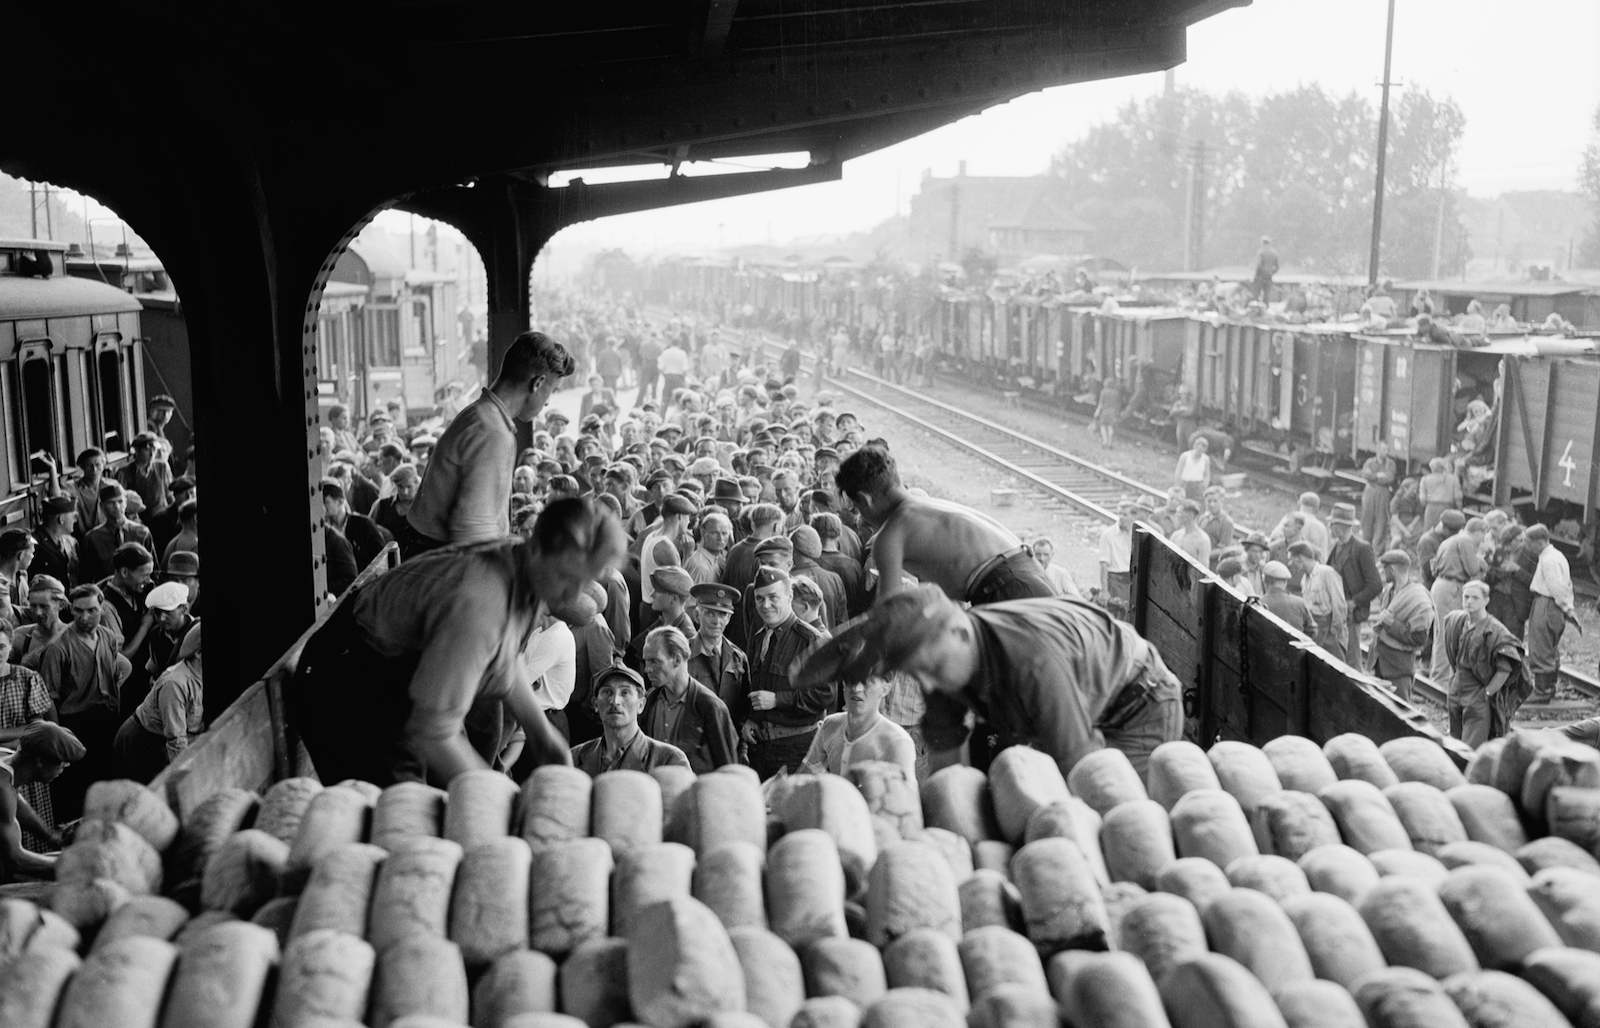 Relief workers unloading bread, 1945